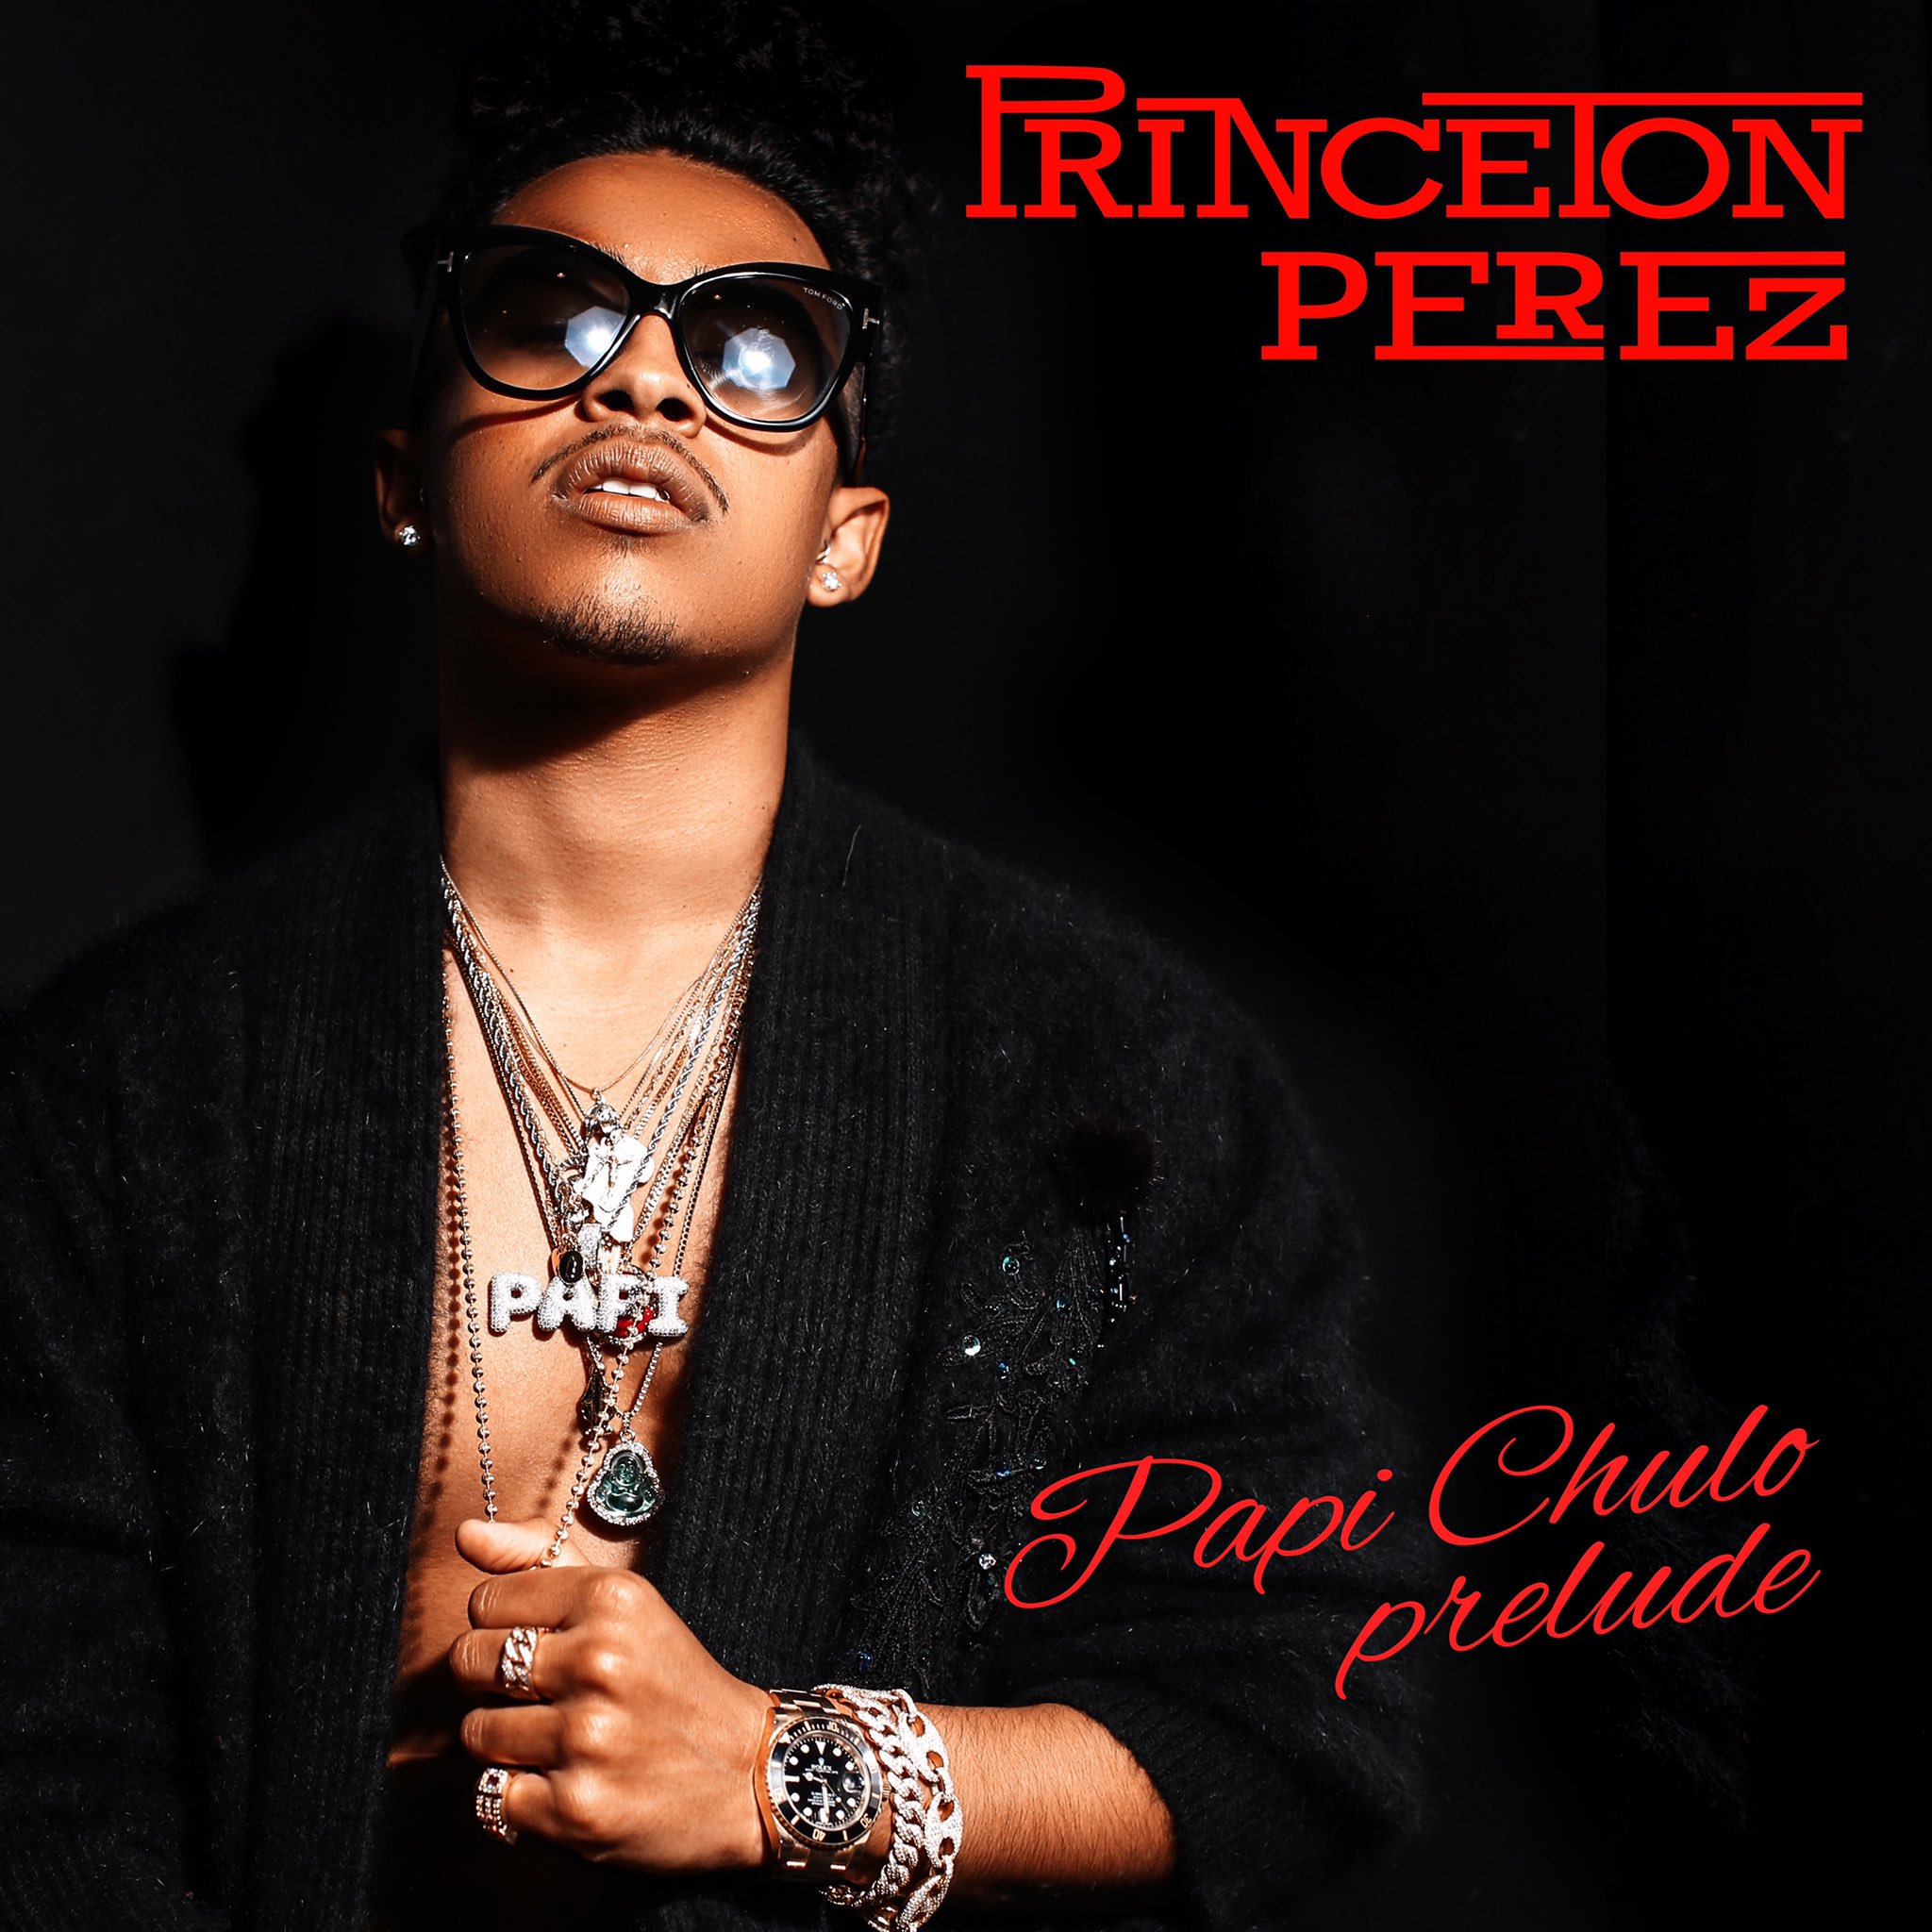 Princeton Perez